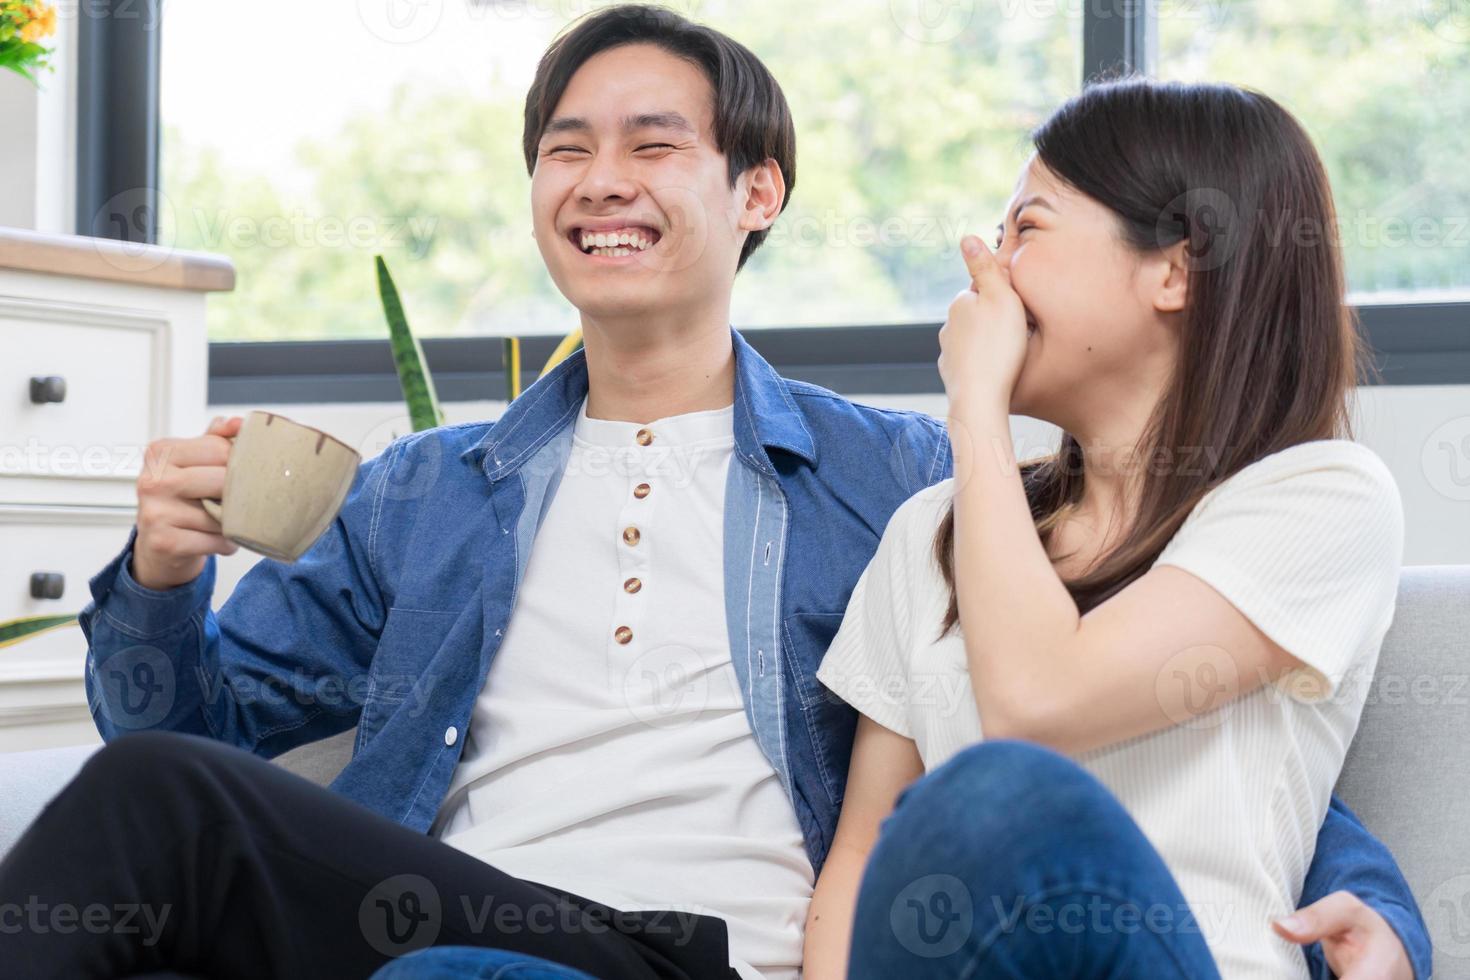 junges asiatisches paar unterhalten sich glücklich chat foto